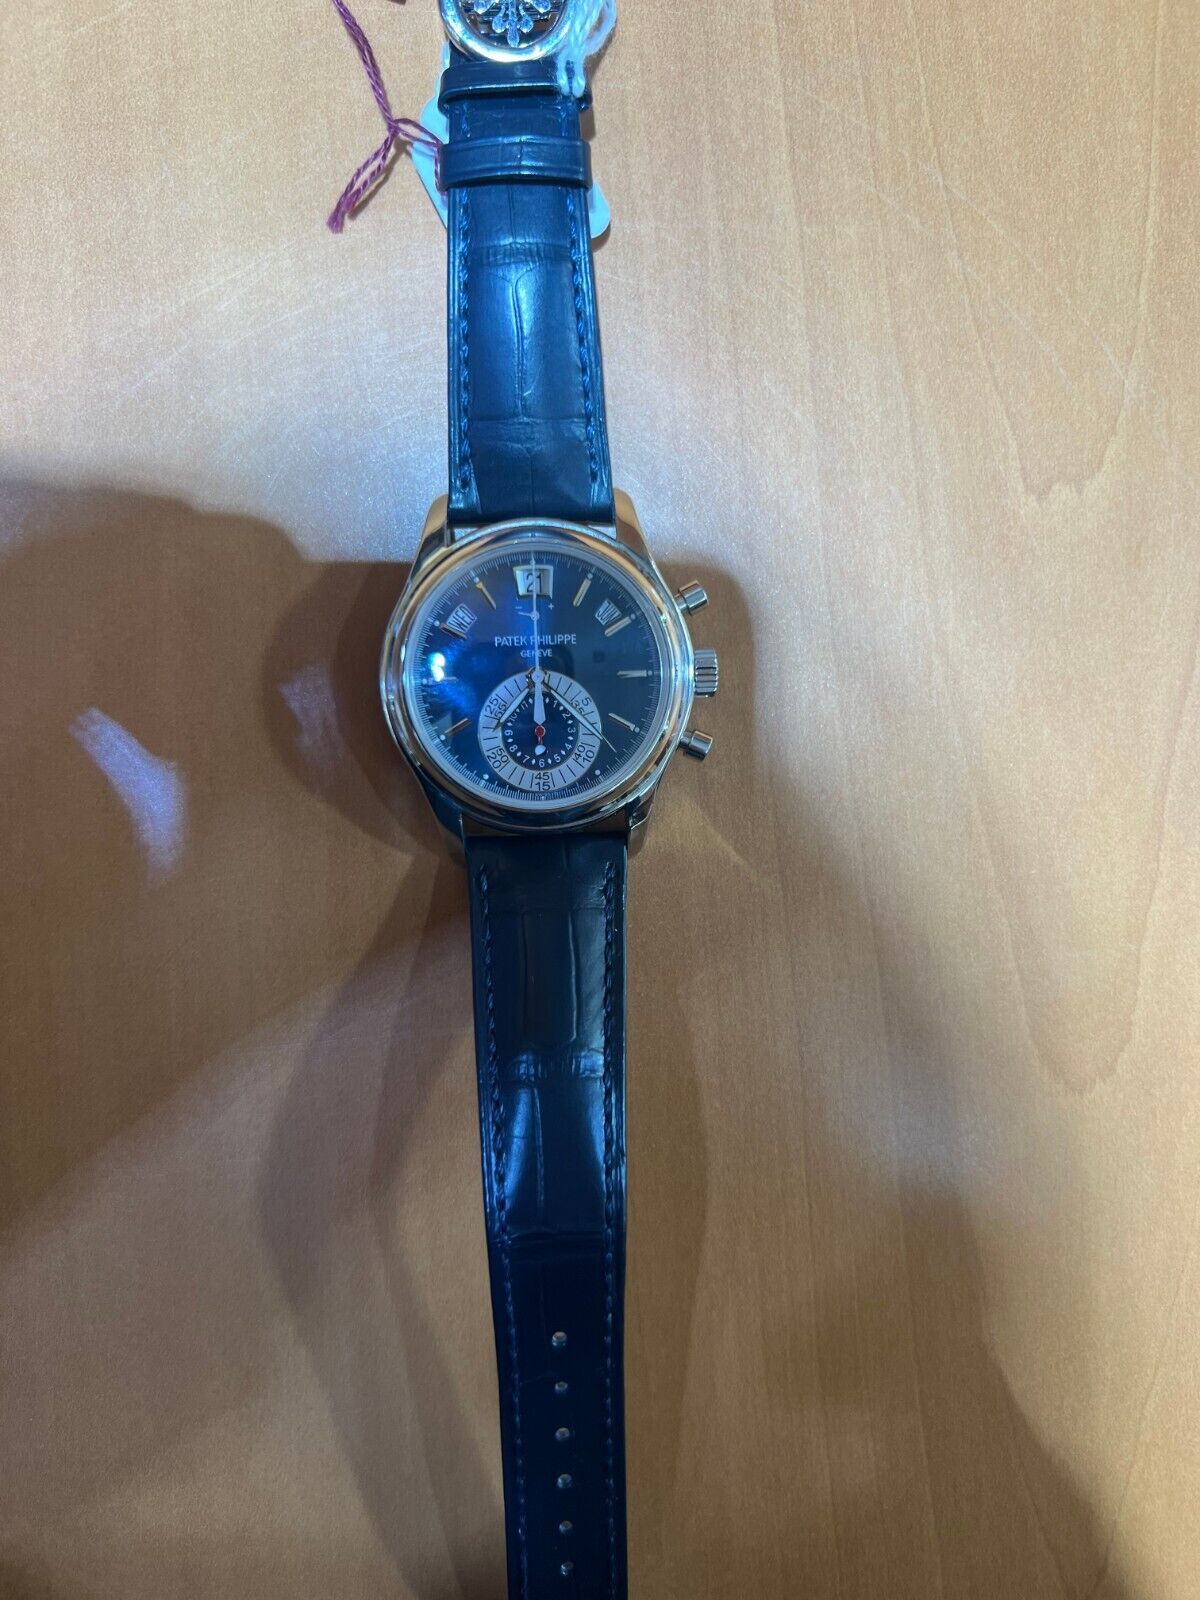 Patek Philippe Complications Blue Men's Watch - 5960P-015